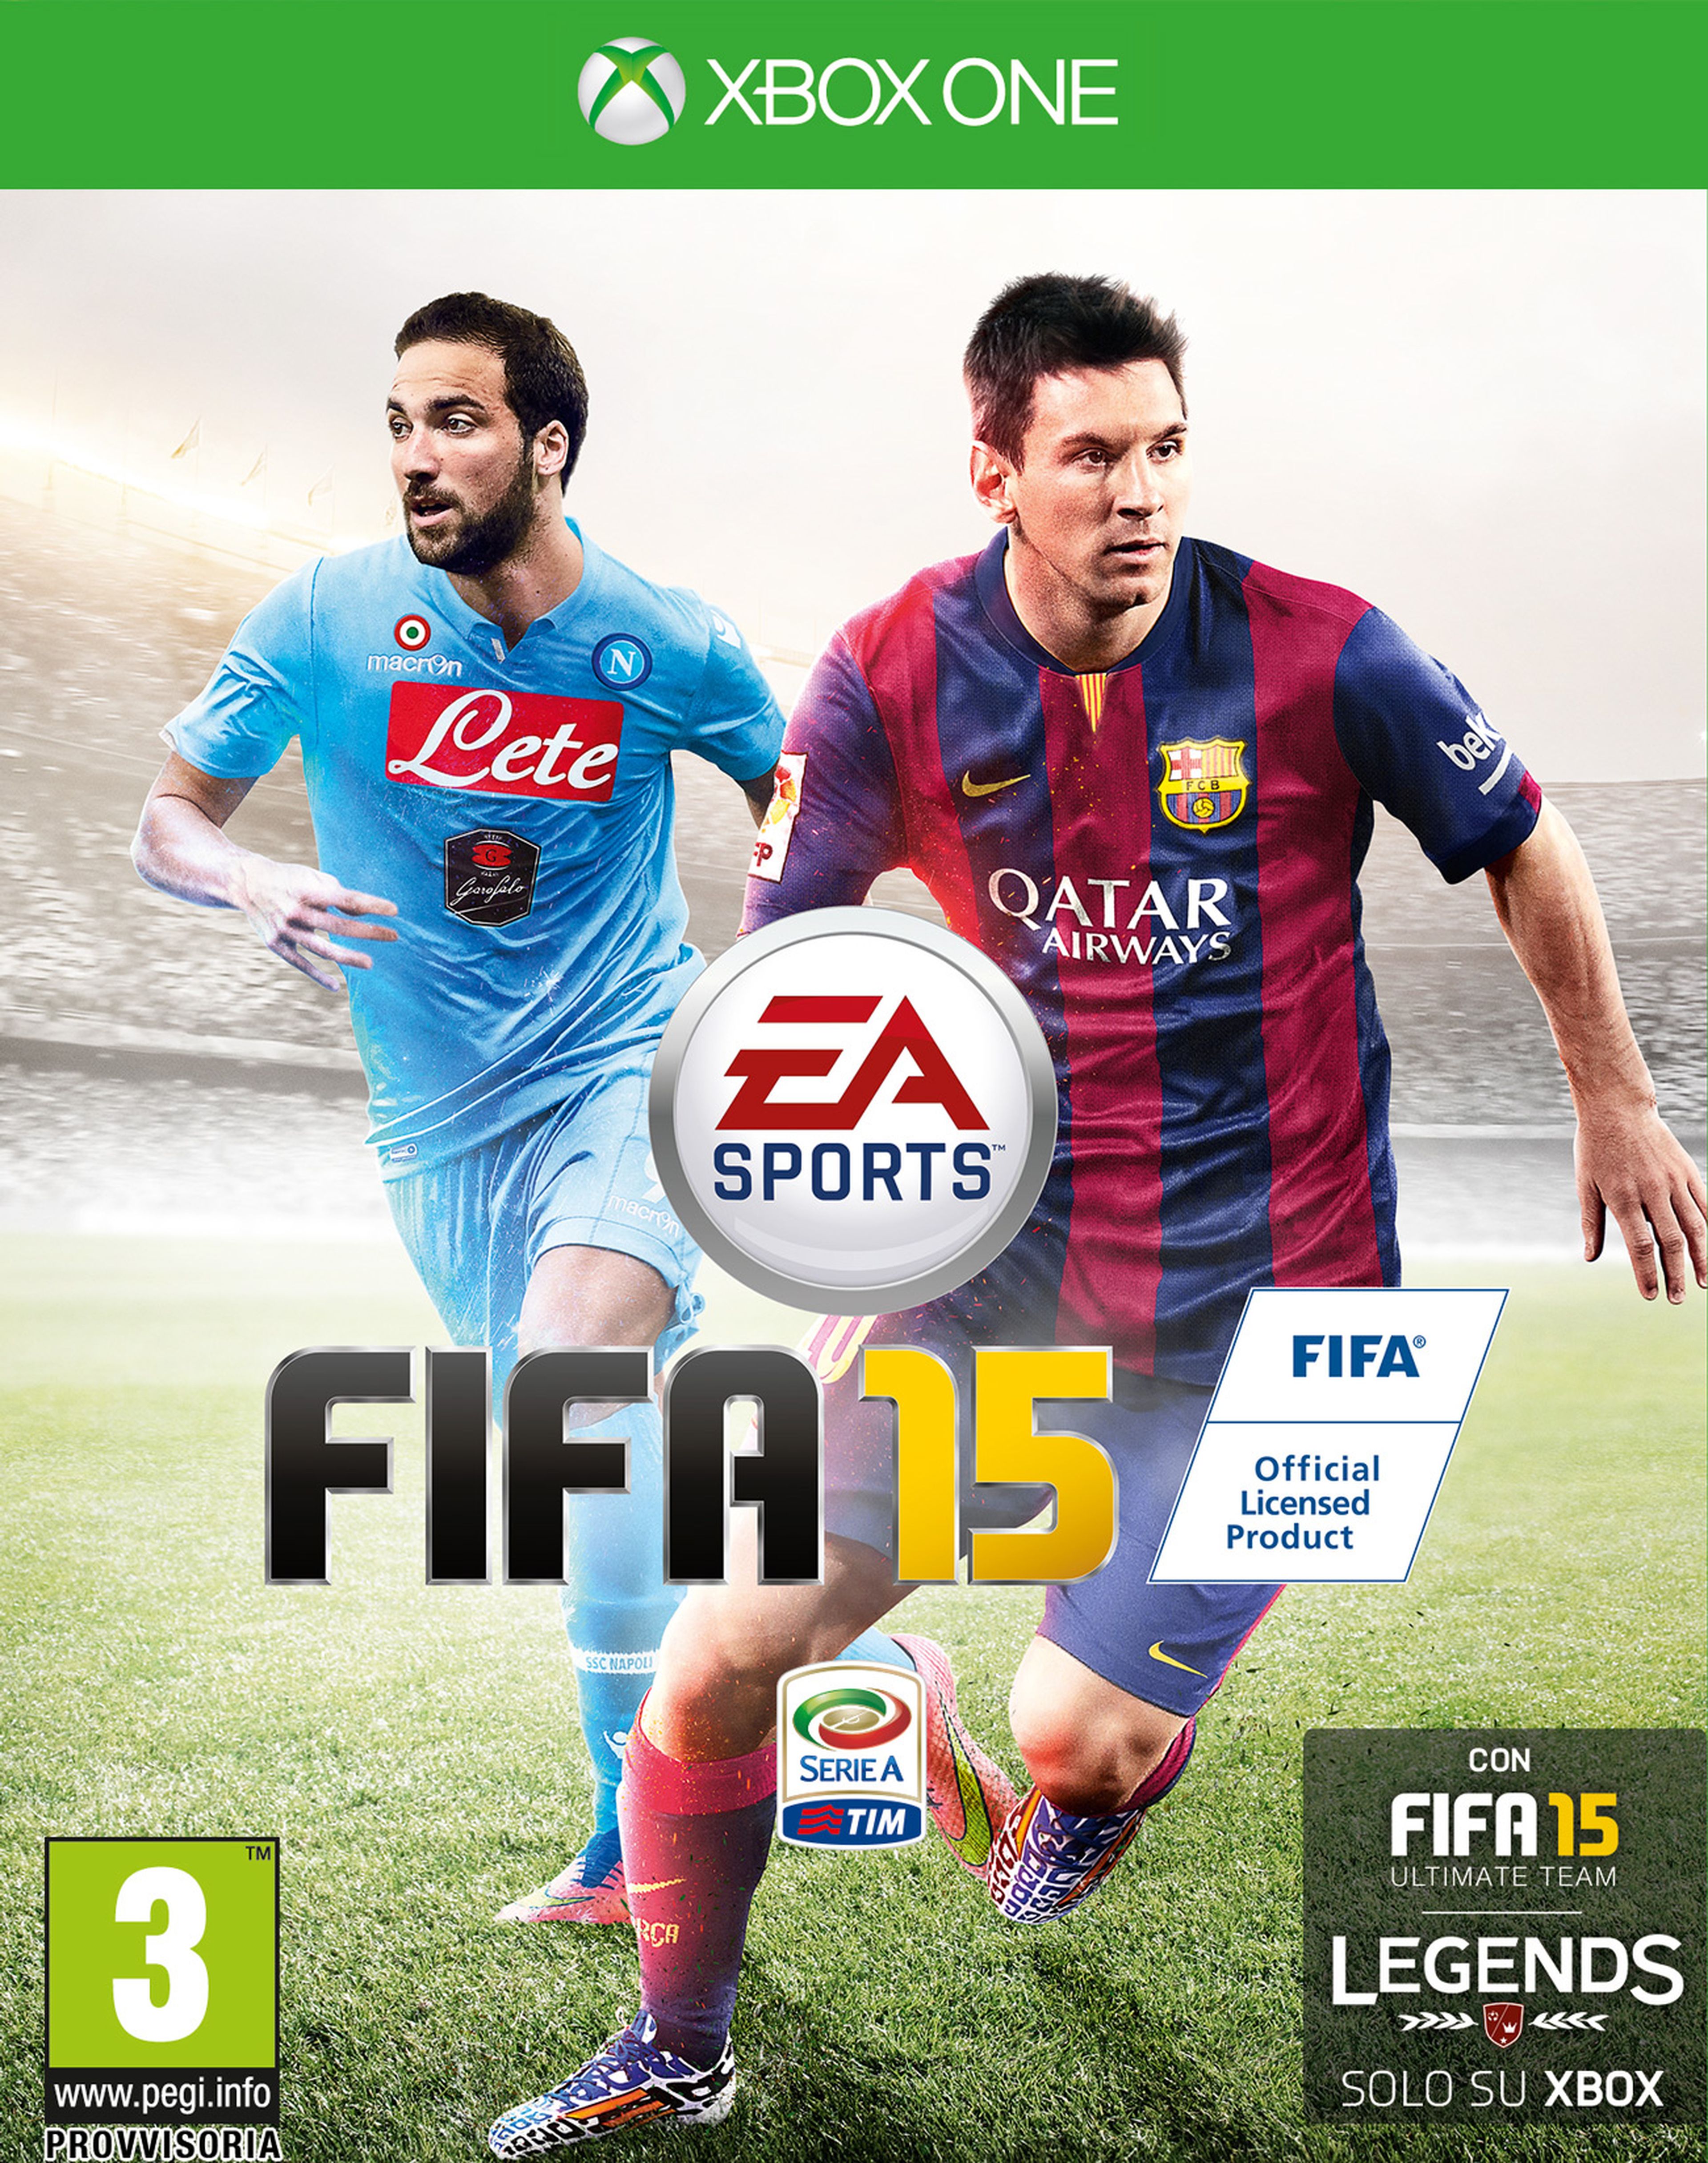 Higuain junto a Messi en la portada de FIFA 15 en Italia